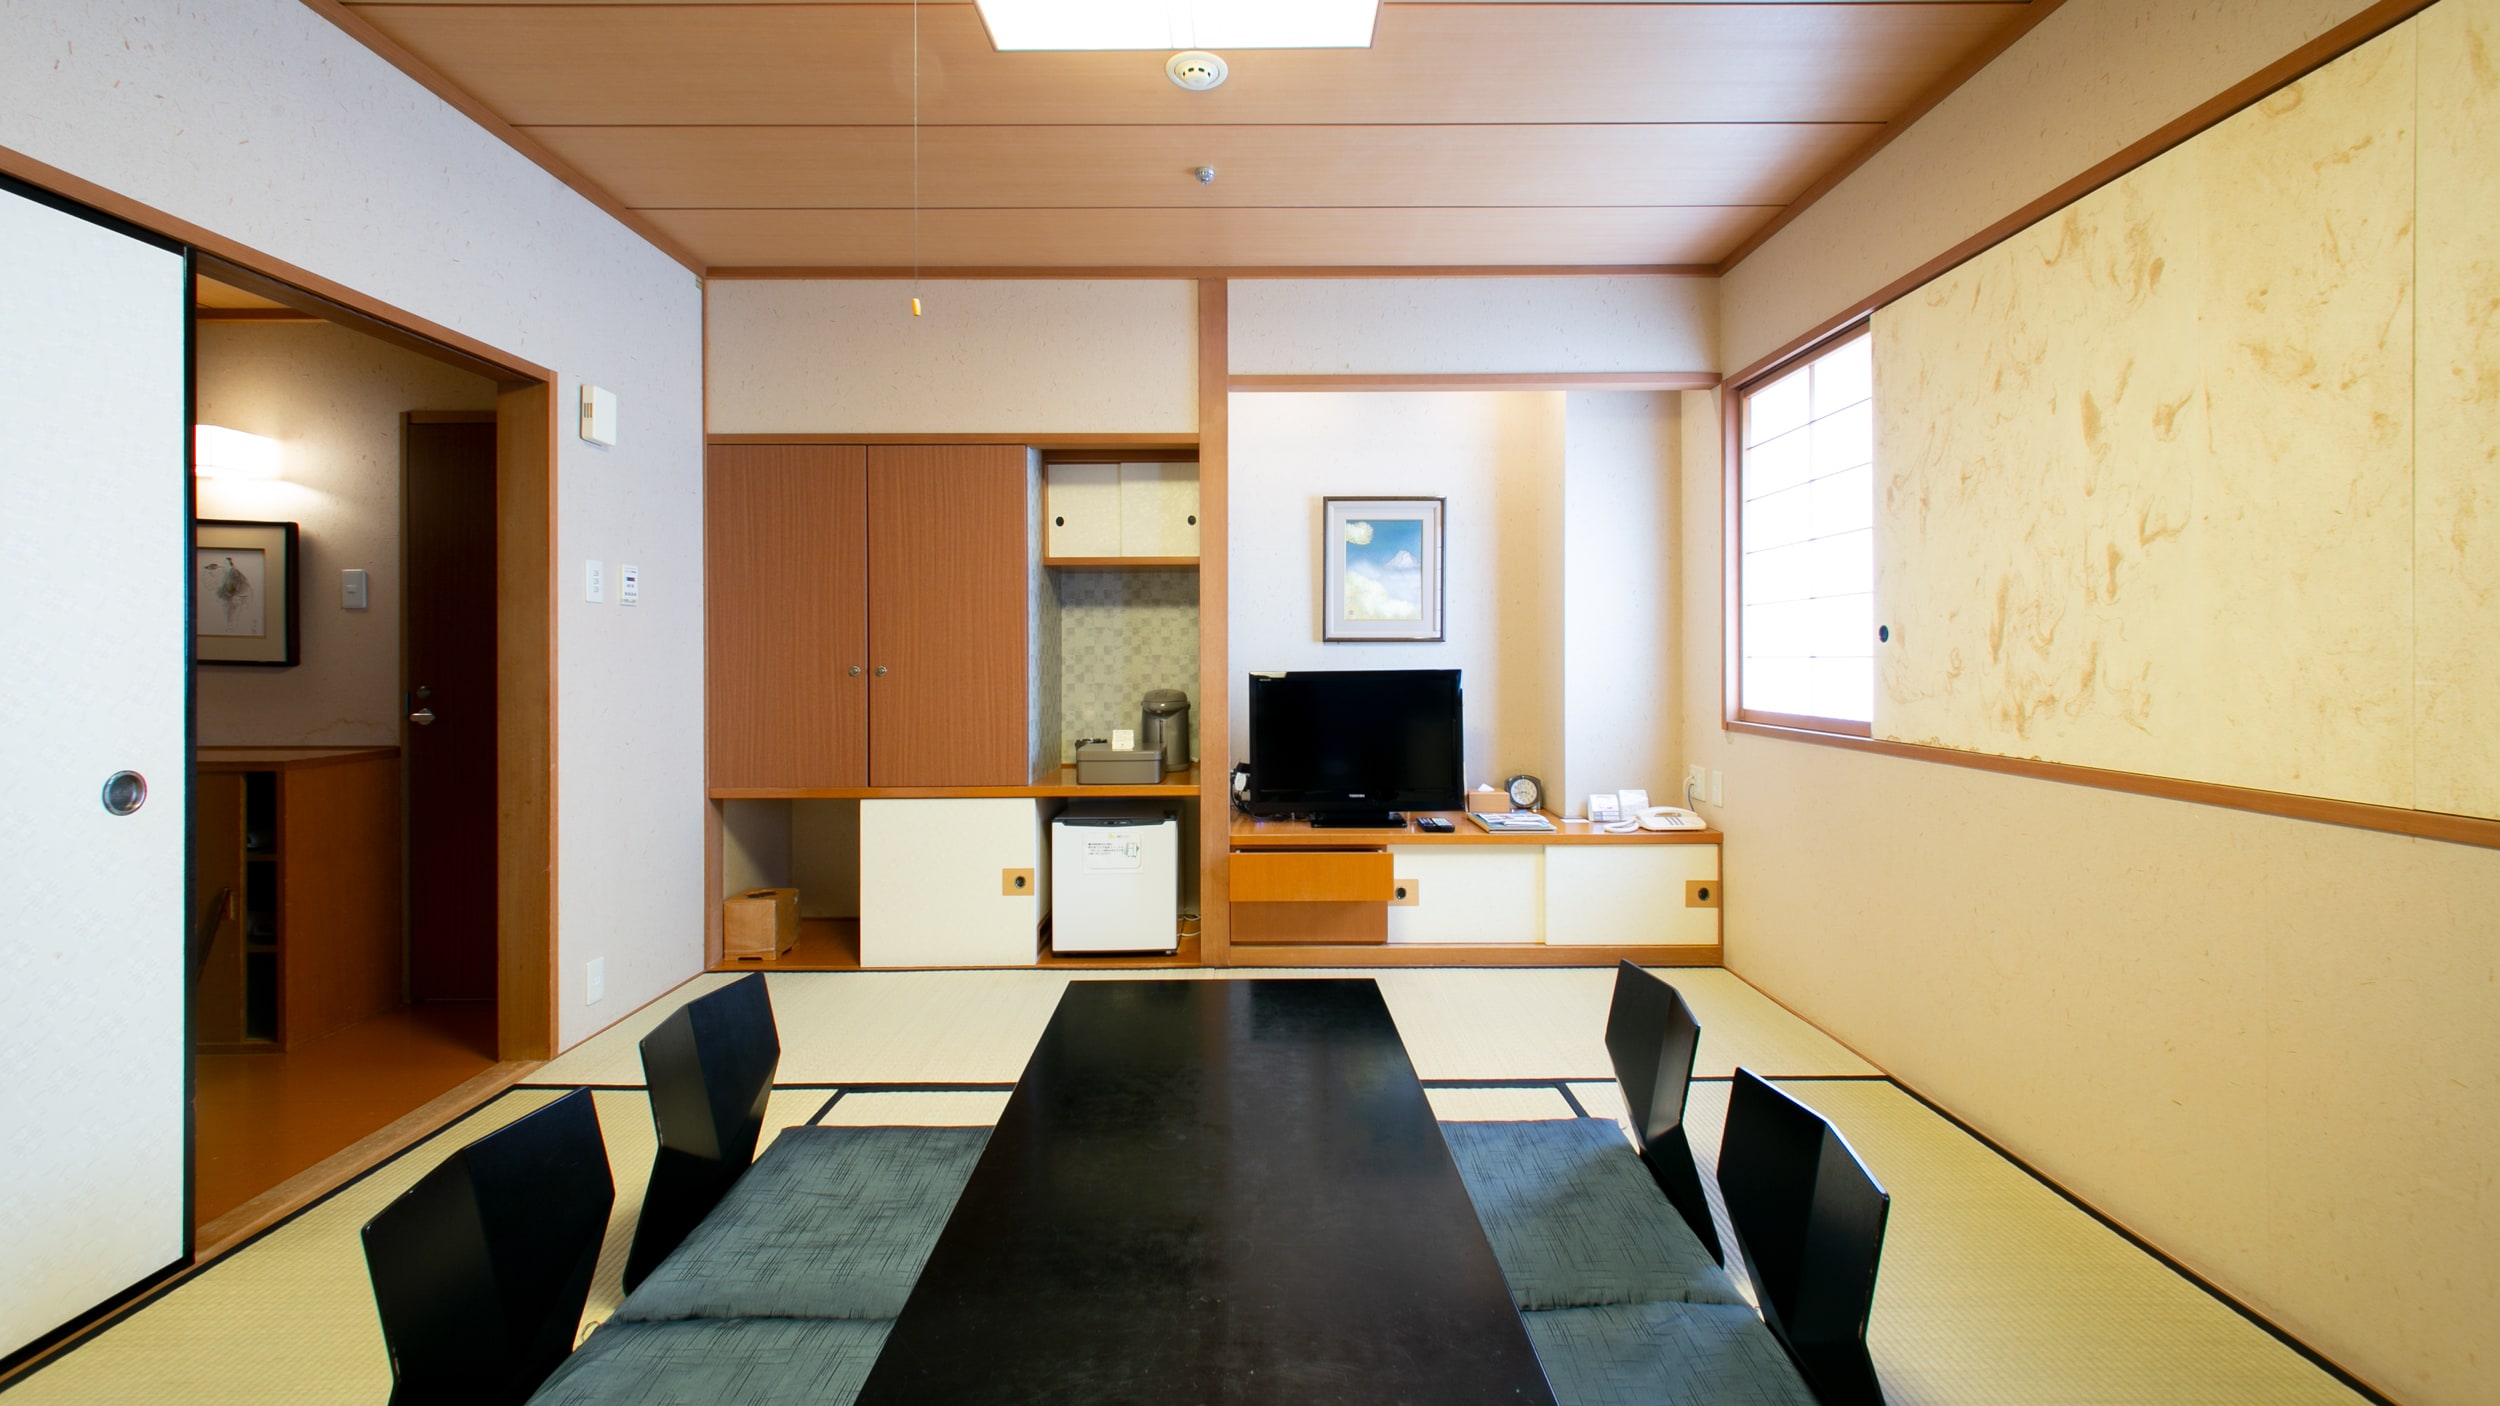 ห้องสไตล์ญี่ปุ่น ห้องสไตล์ญี่ปุ่น 8 เสื่อทาทามิ มีห้องน้ำและห้องส้วมแยกกัน